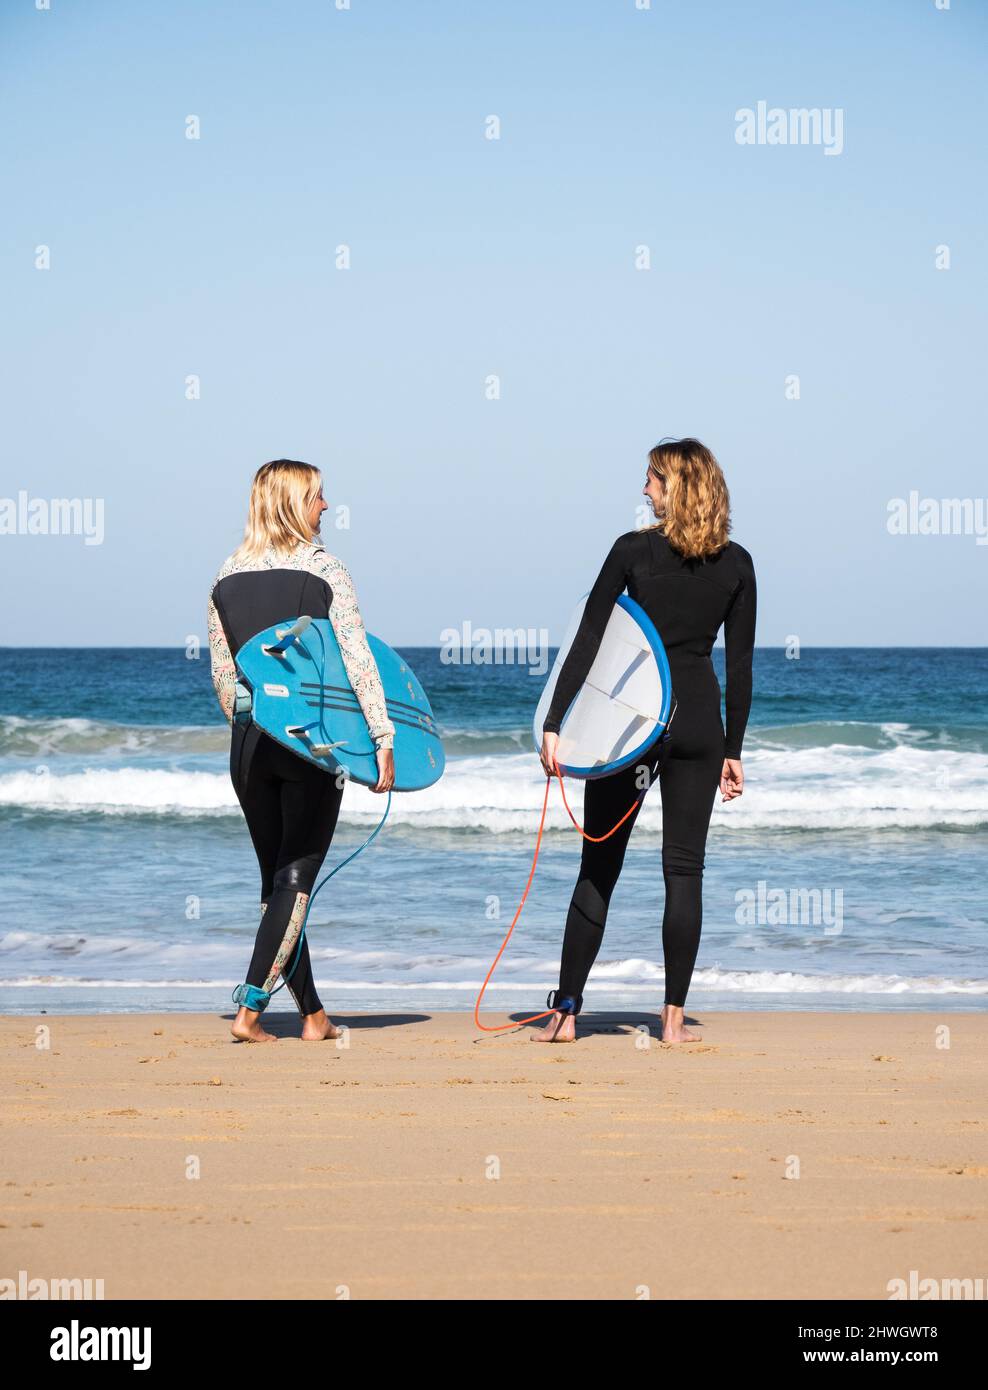 2 kaukasische Surferinnen stehen am Strand und beobachten die Wellen. Sie tragen Winter-Neoprenanzüge und halten Surfbretter. Stockfoto